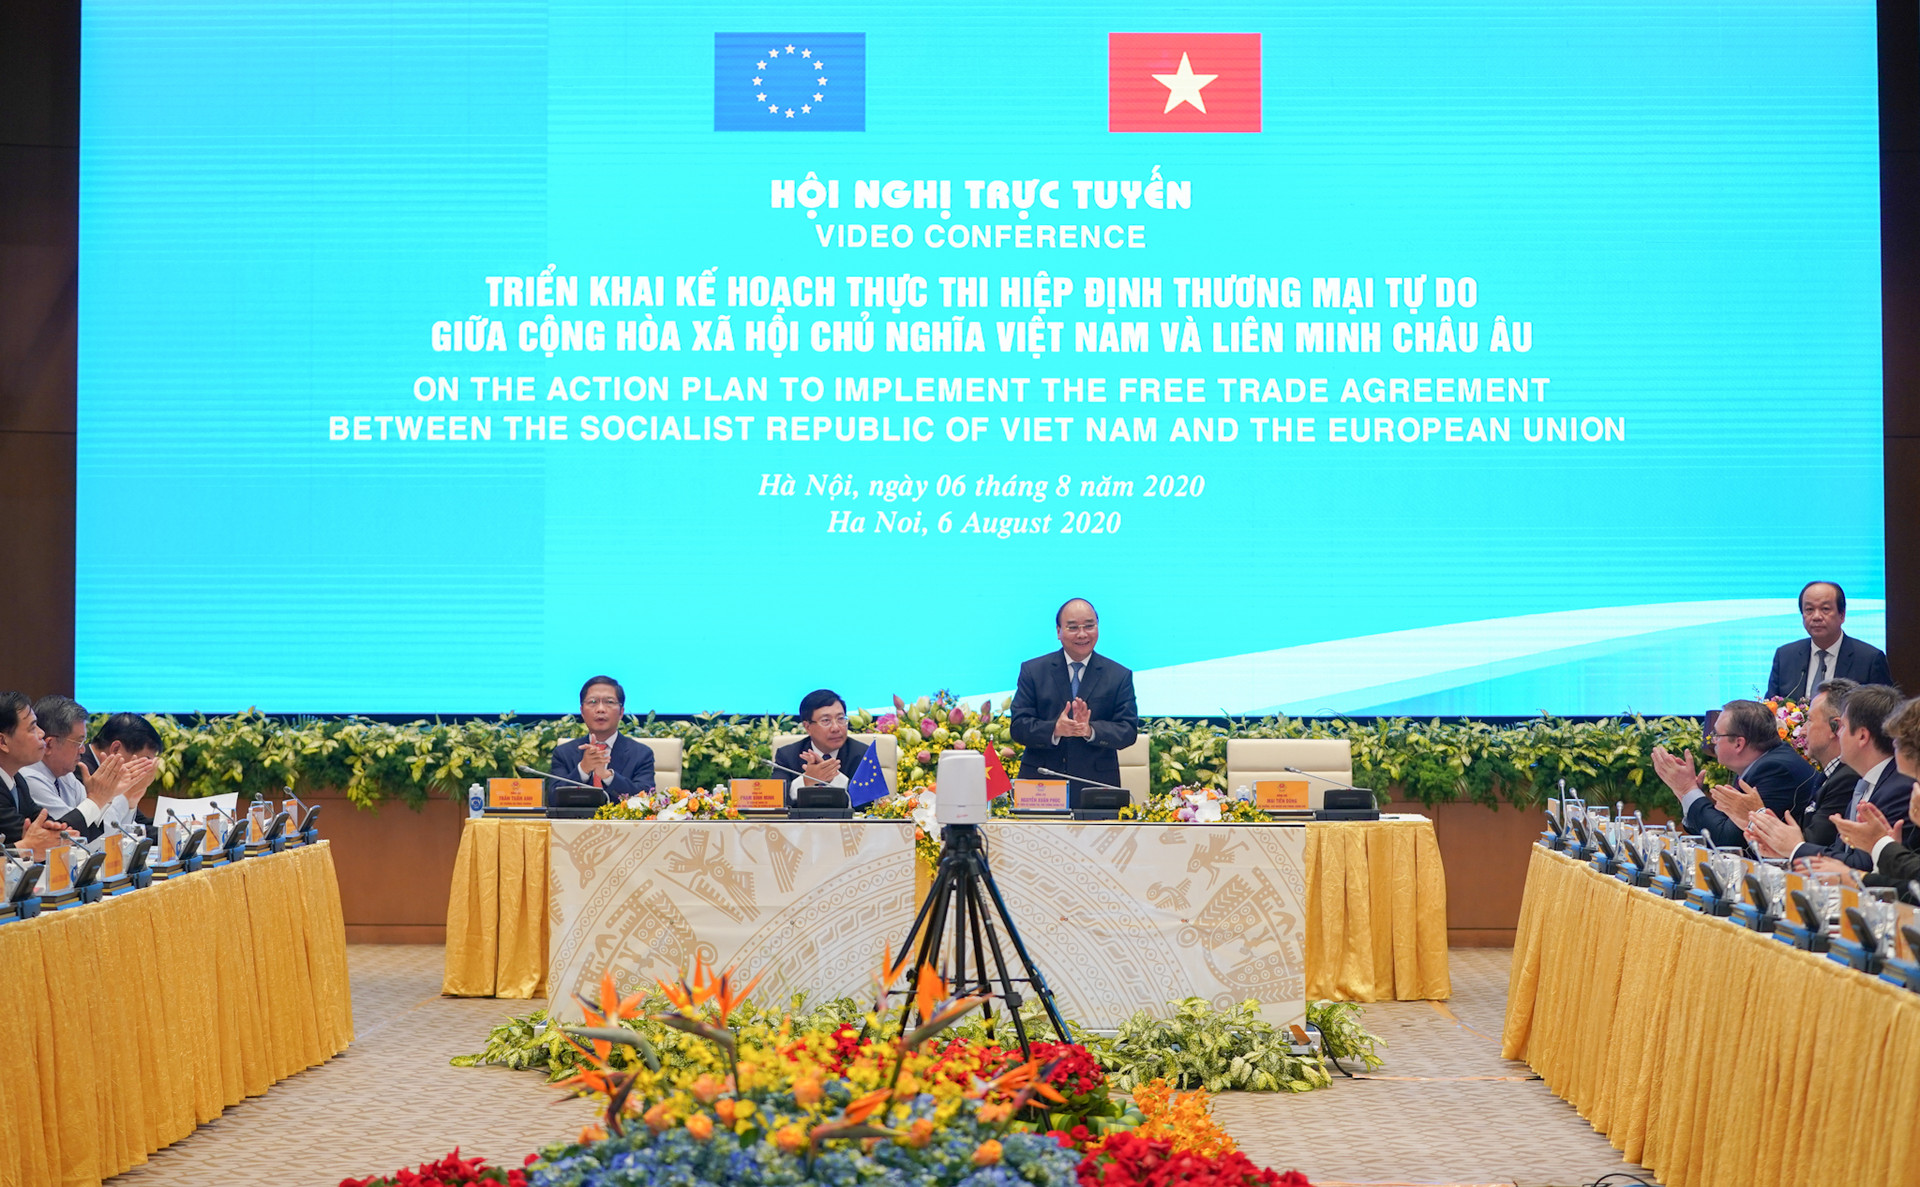 “Cao tốc EVFTA” mở rộng không gian rộng lớn cho Việt Nam – EU - Ảnh 2.